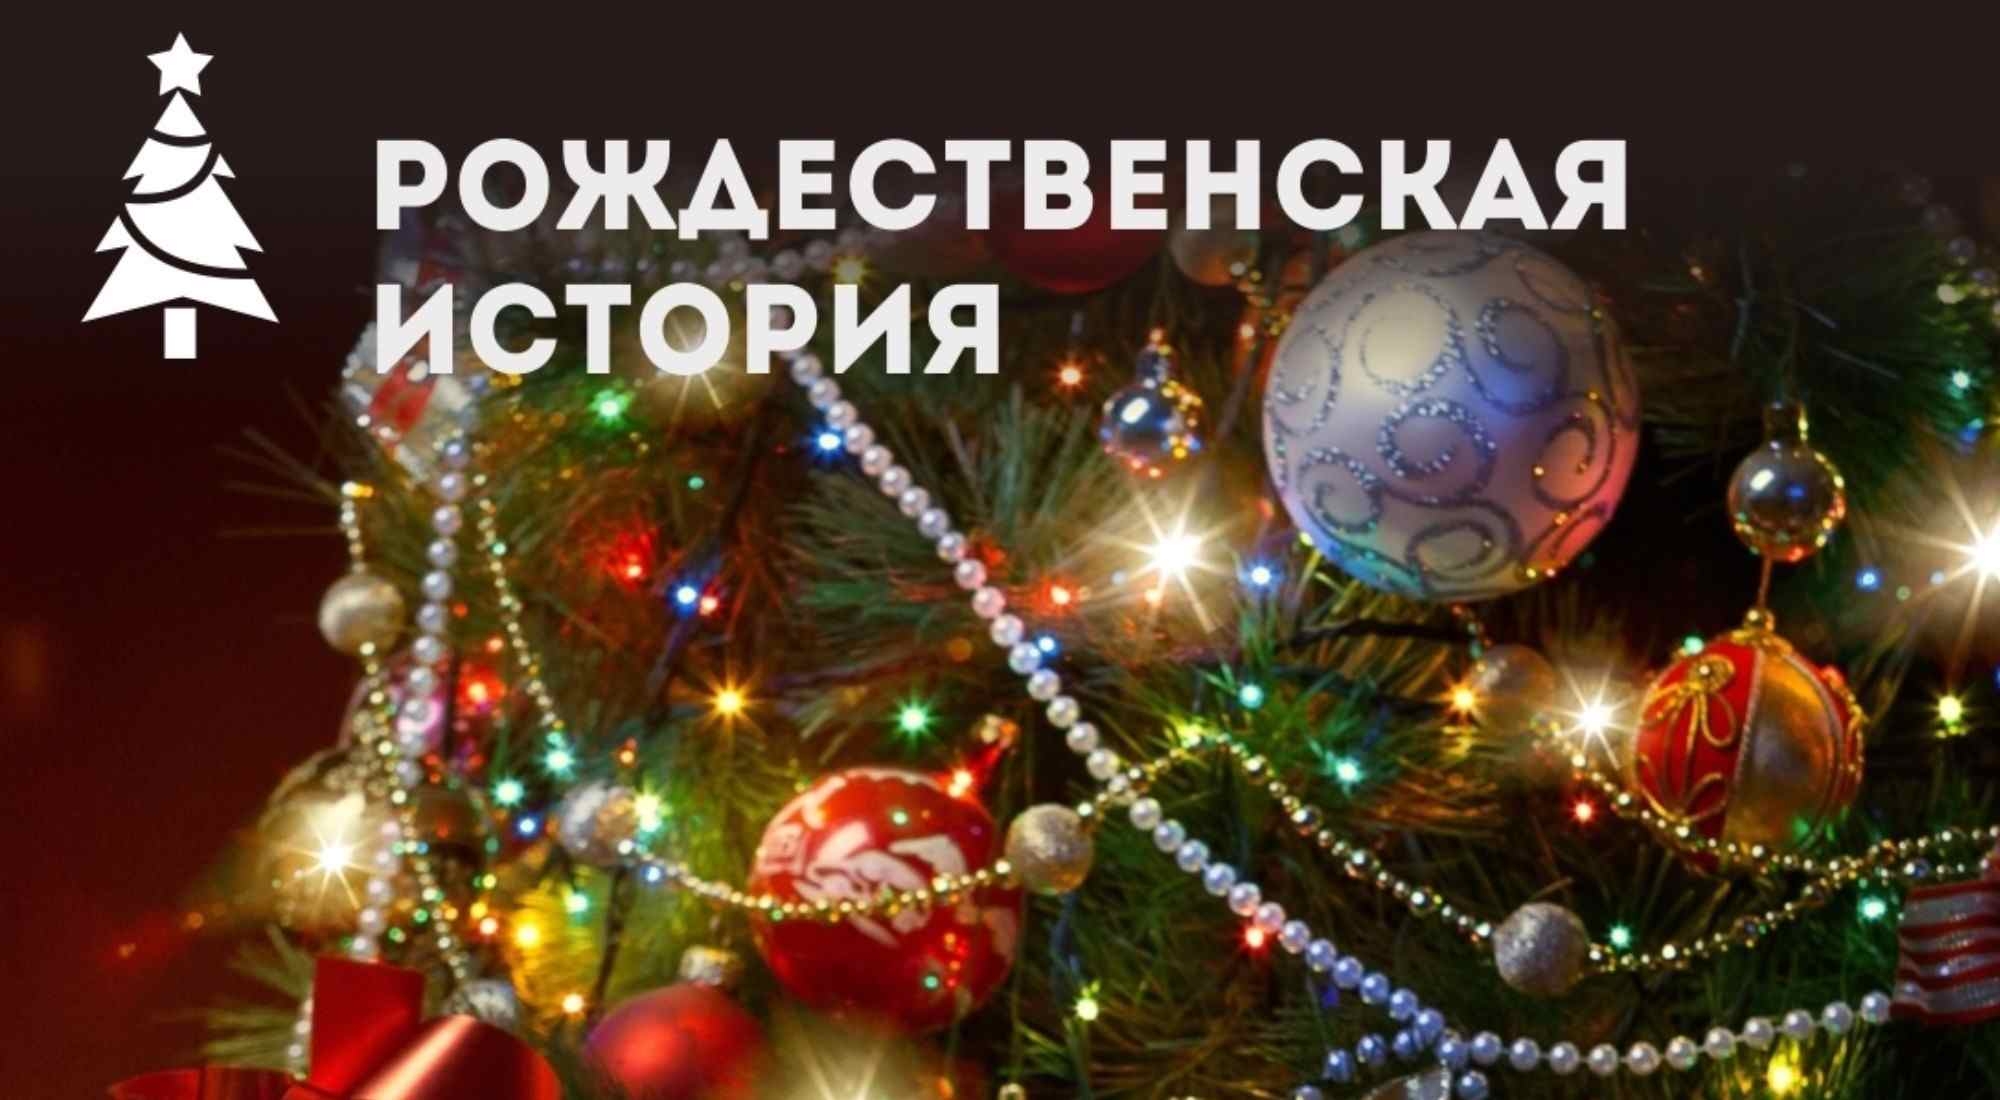 Квест Рождественская история в Волгограде фото 0